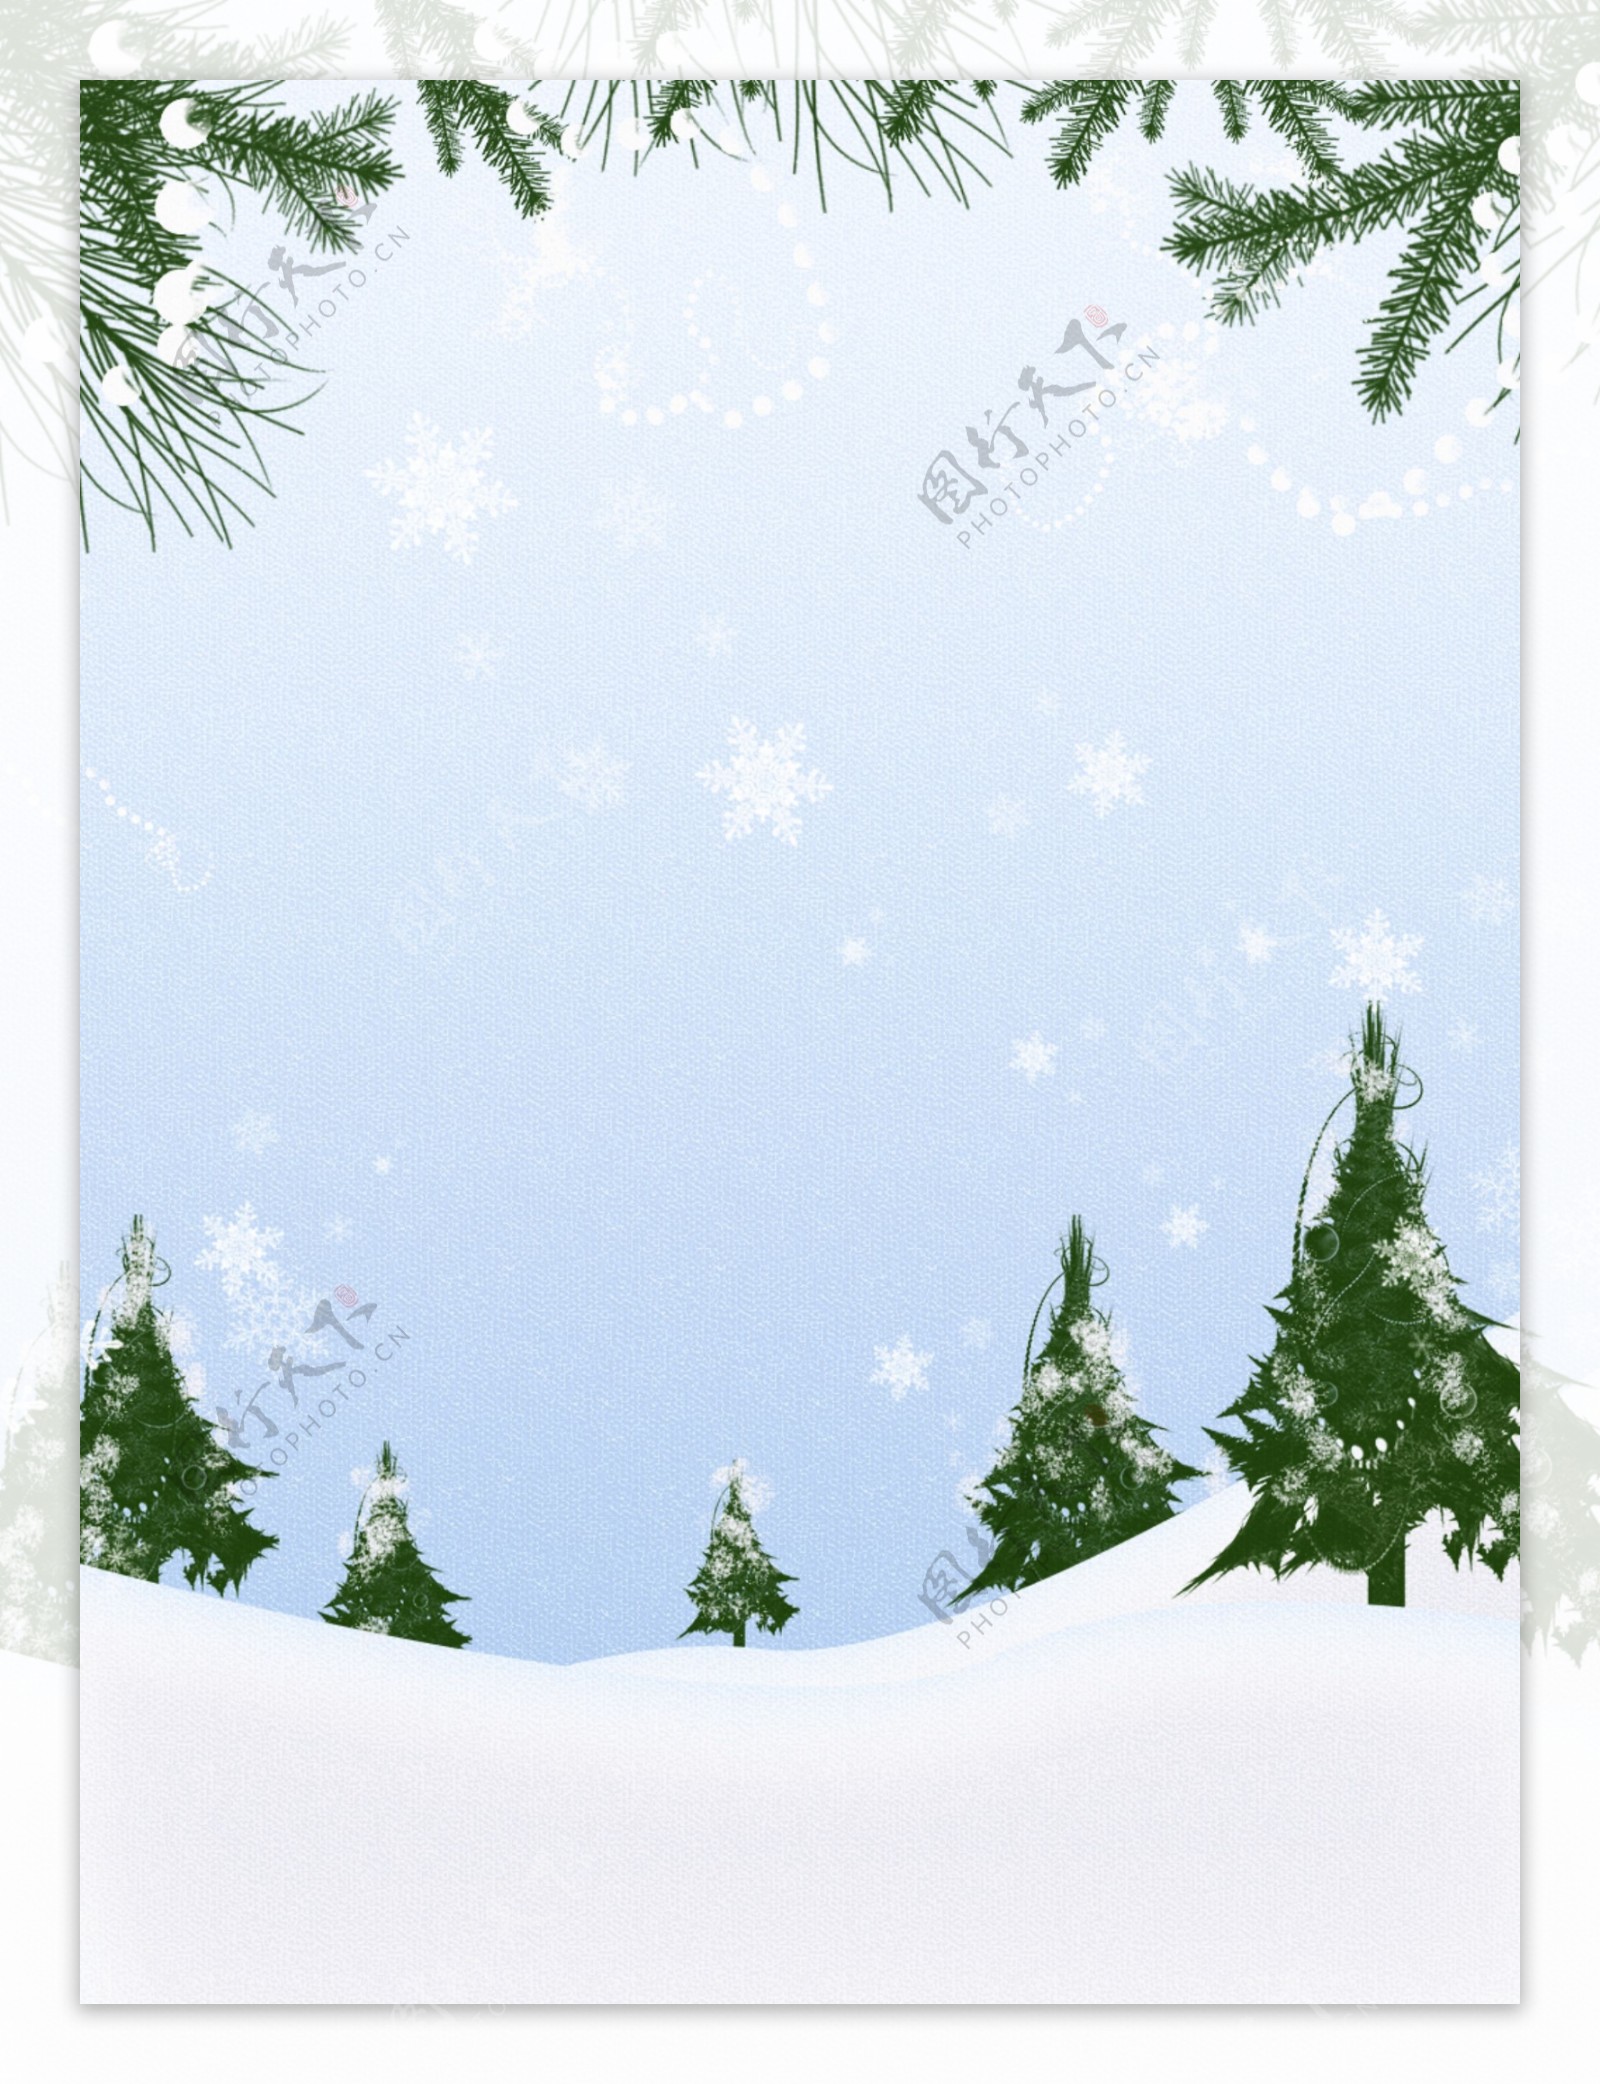 纯原创手绘小清新圣诞节树林雪地背景